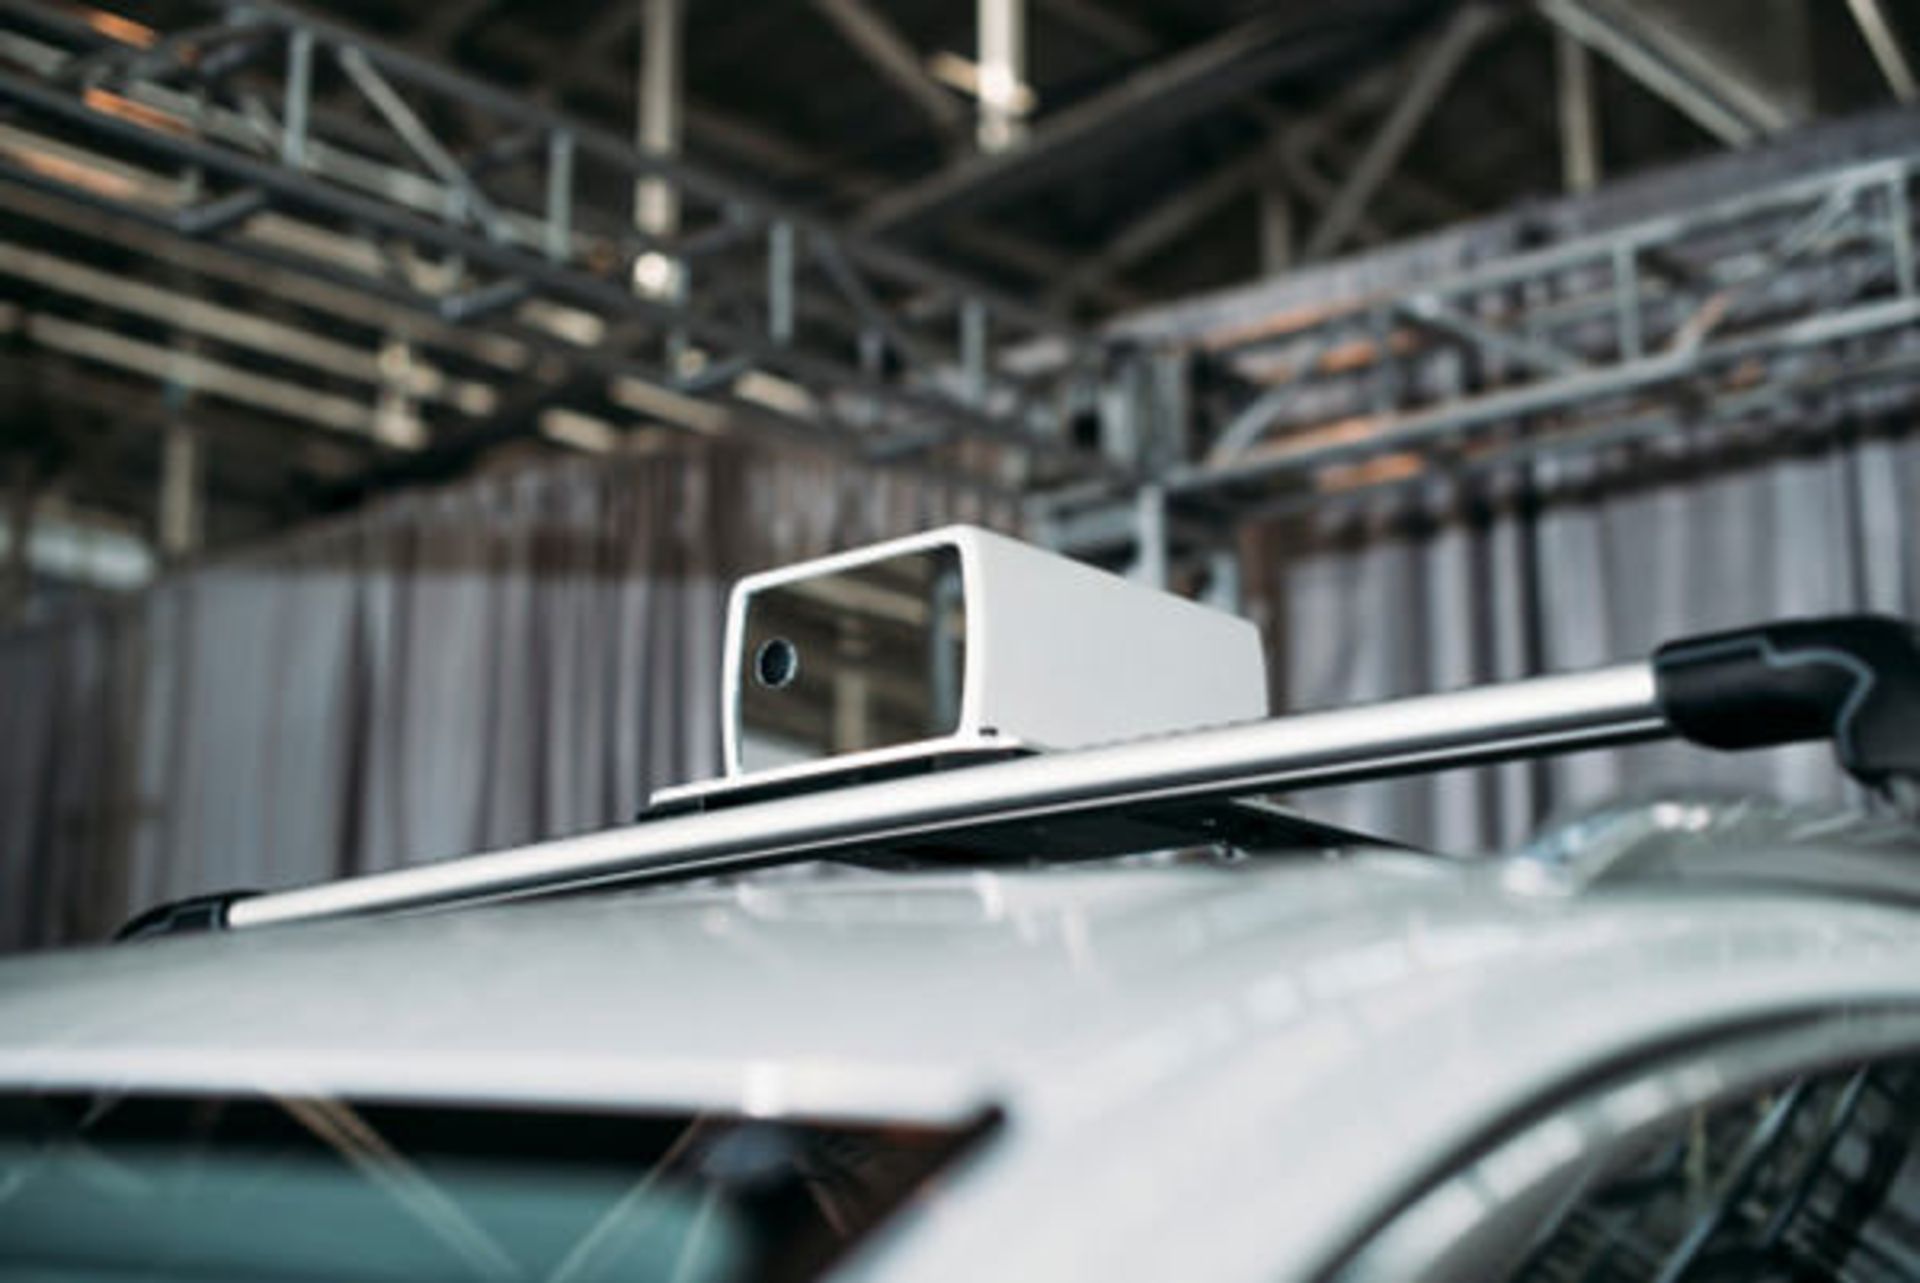 مرجع متخصصين ايران Aeva lidar autonomous car sensor / حسگر ليدار خودروي خودران آئوا 